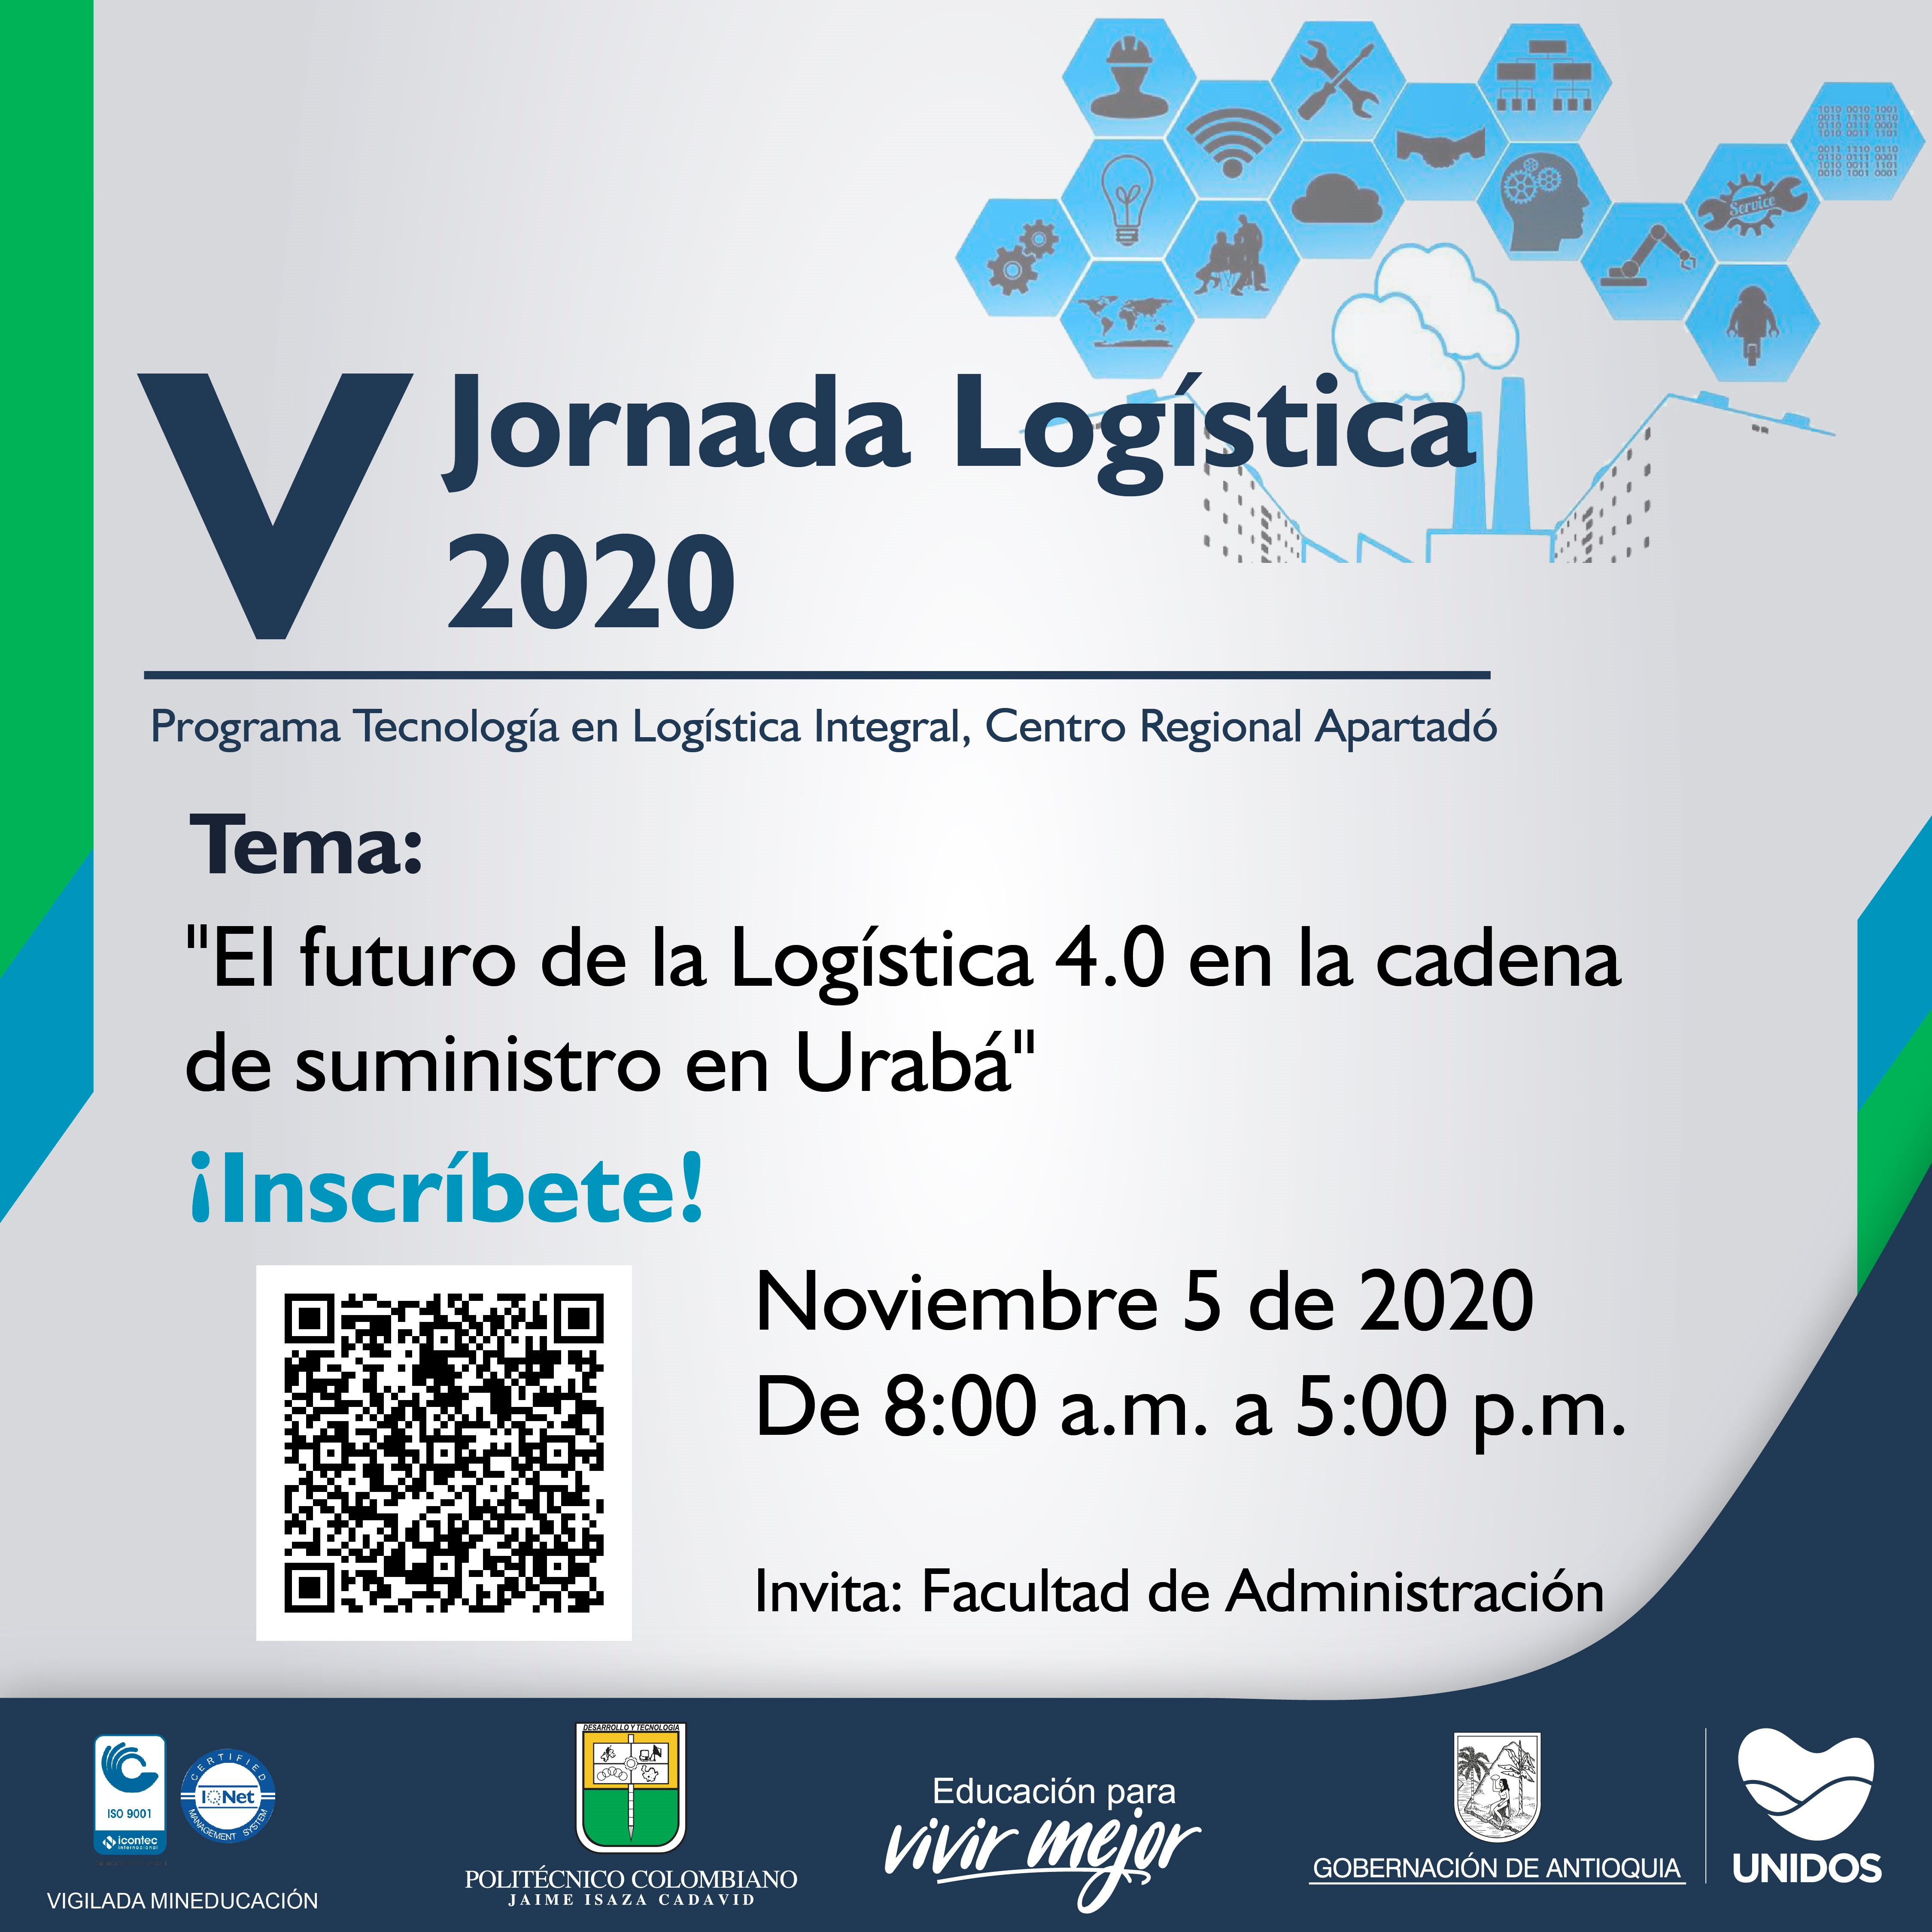 V Jornada Logística 2020 - El futuro de la Logística 4.0 en la cadena de suministro en Urabá